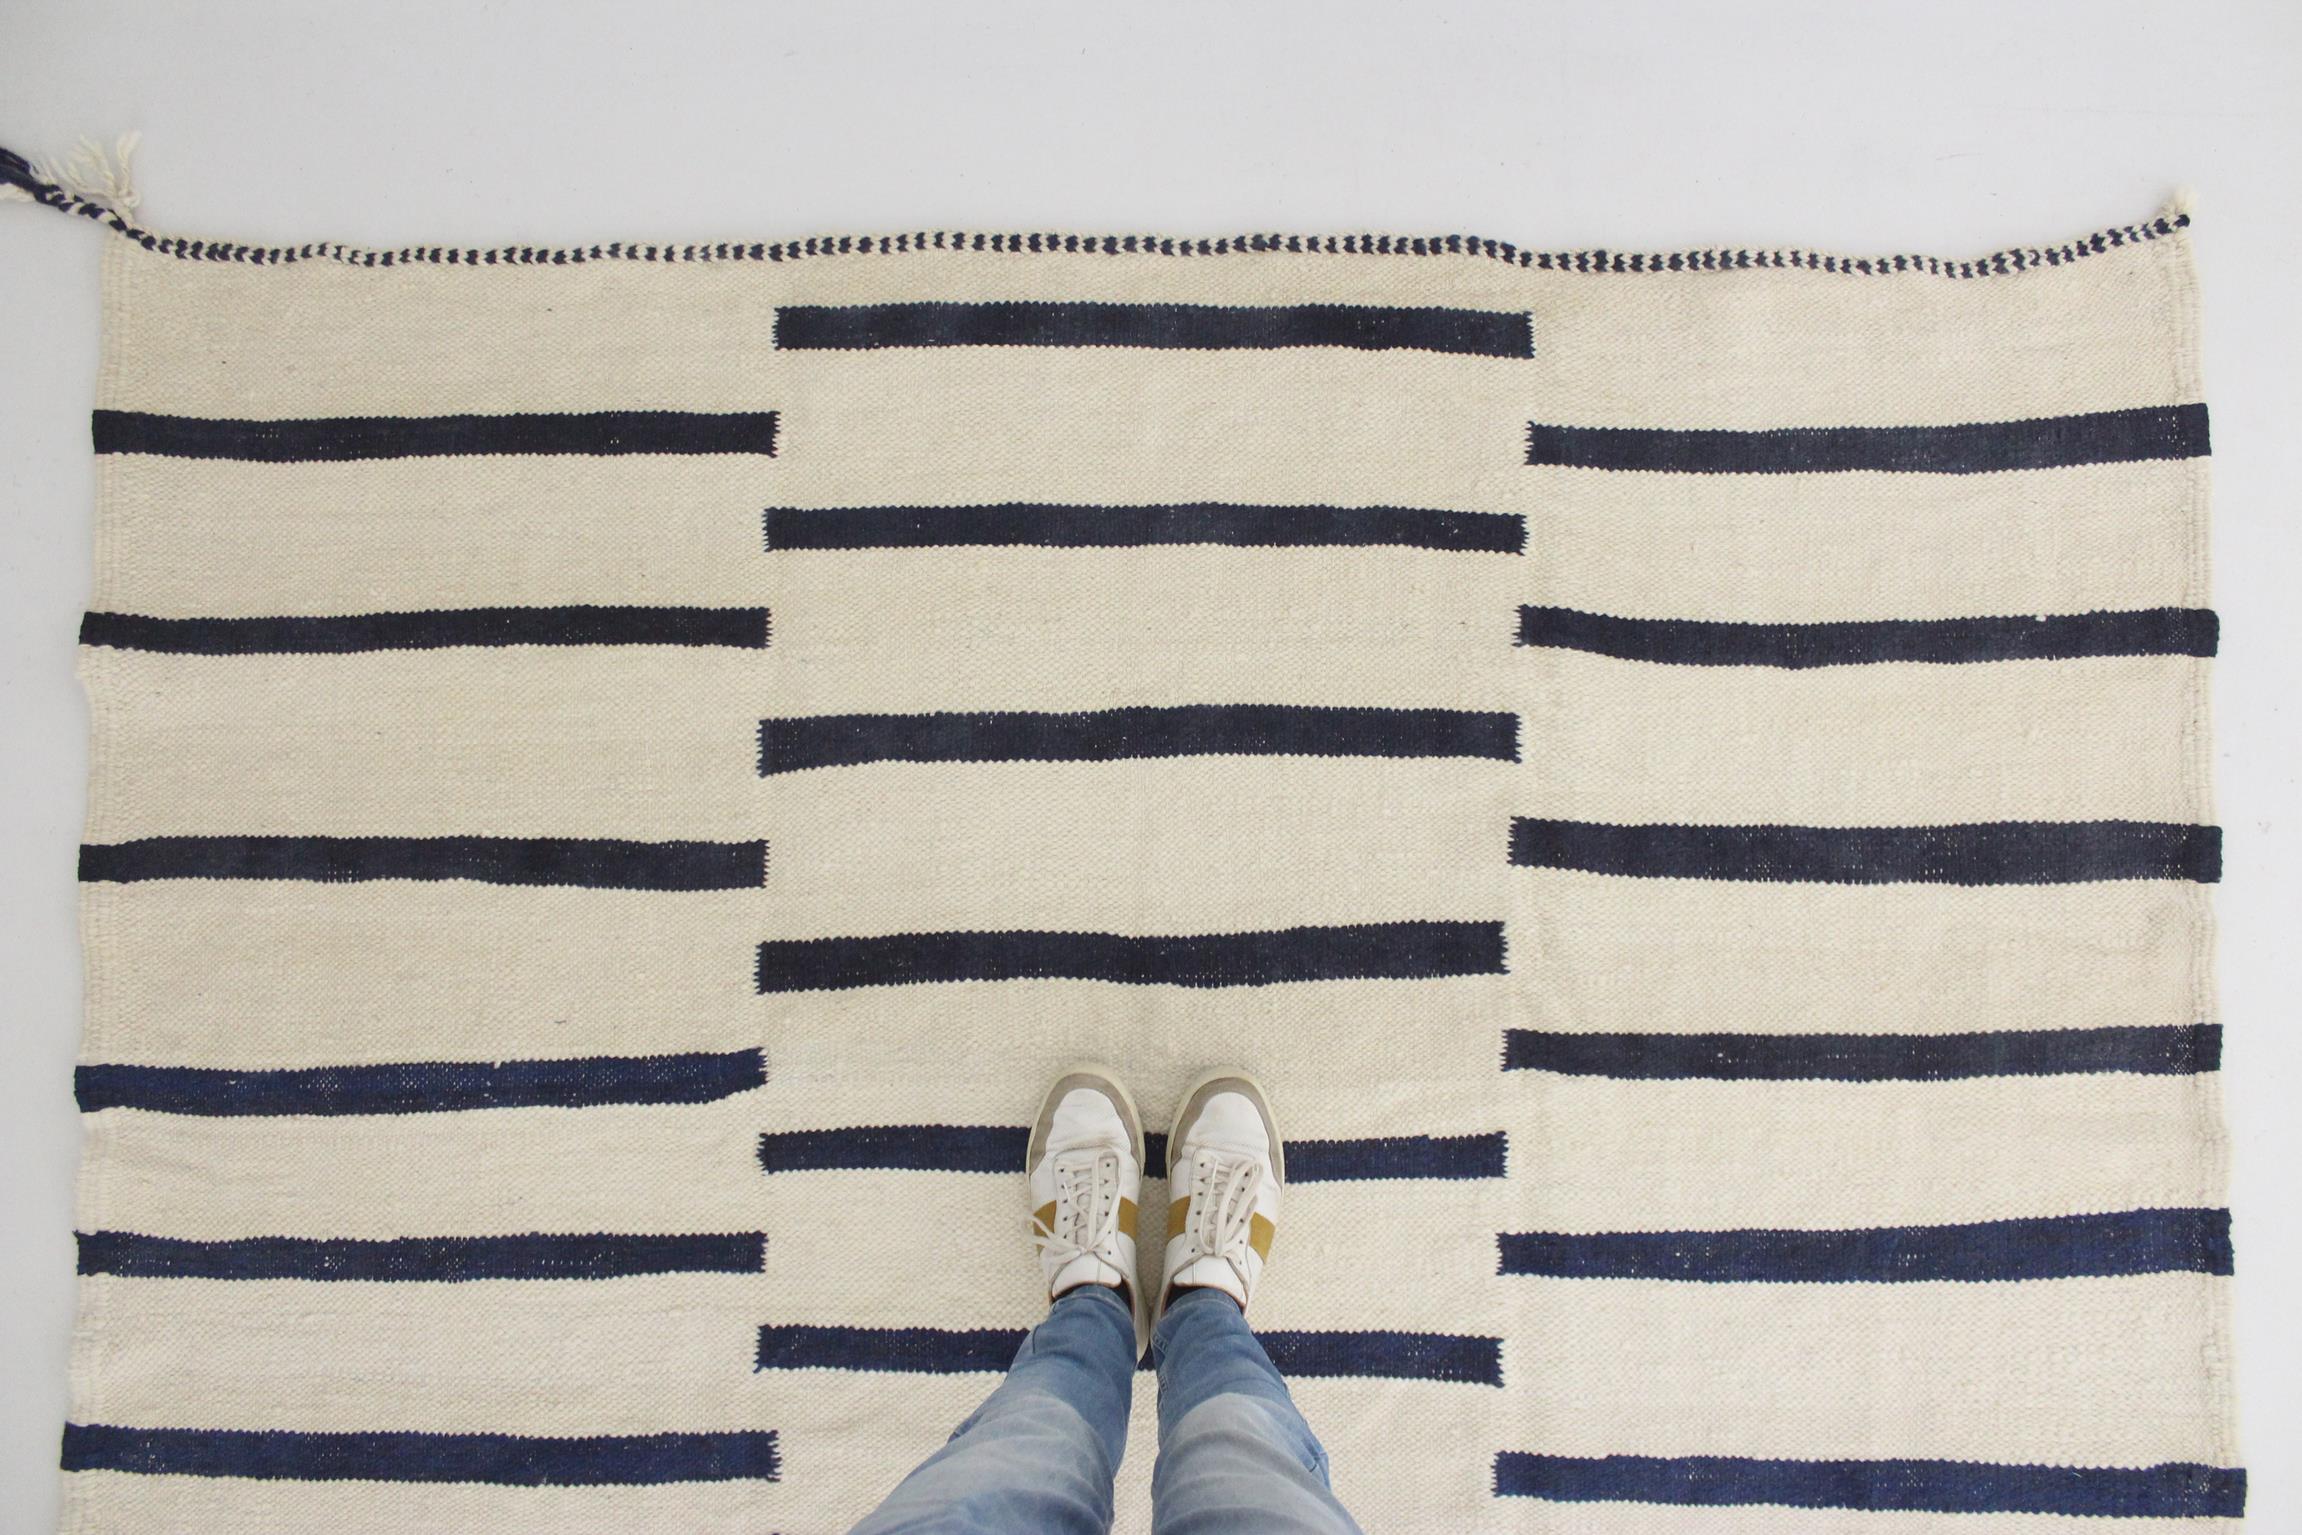 Modern Moroccan kilim rug - Cream/blue - 6.5x10.6feet / 200x323cm For Sale 1